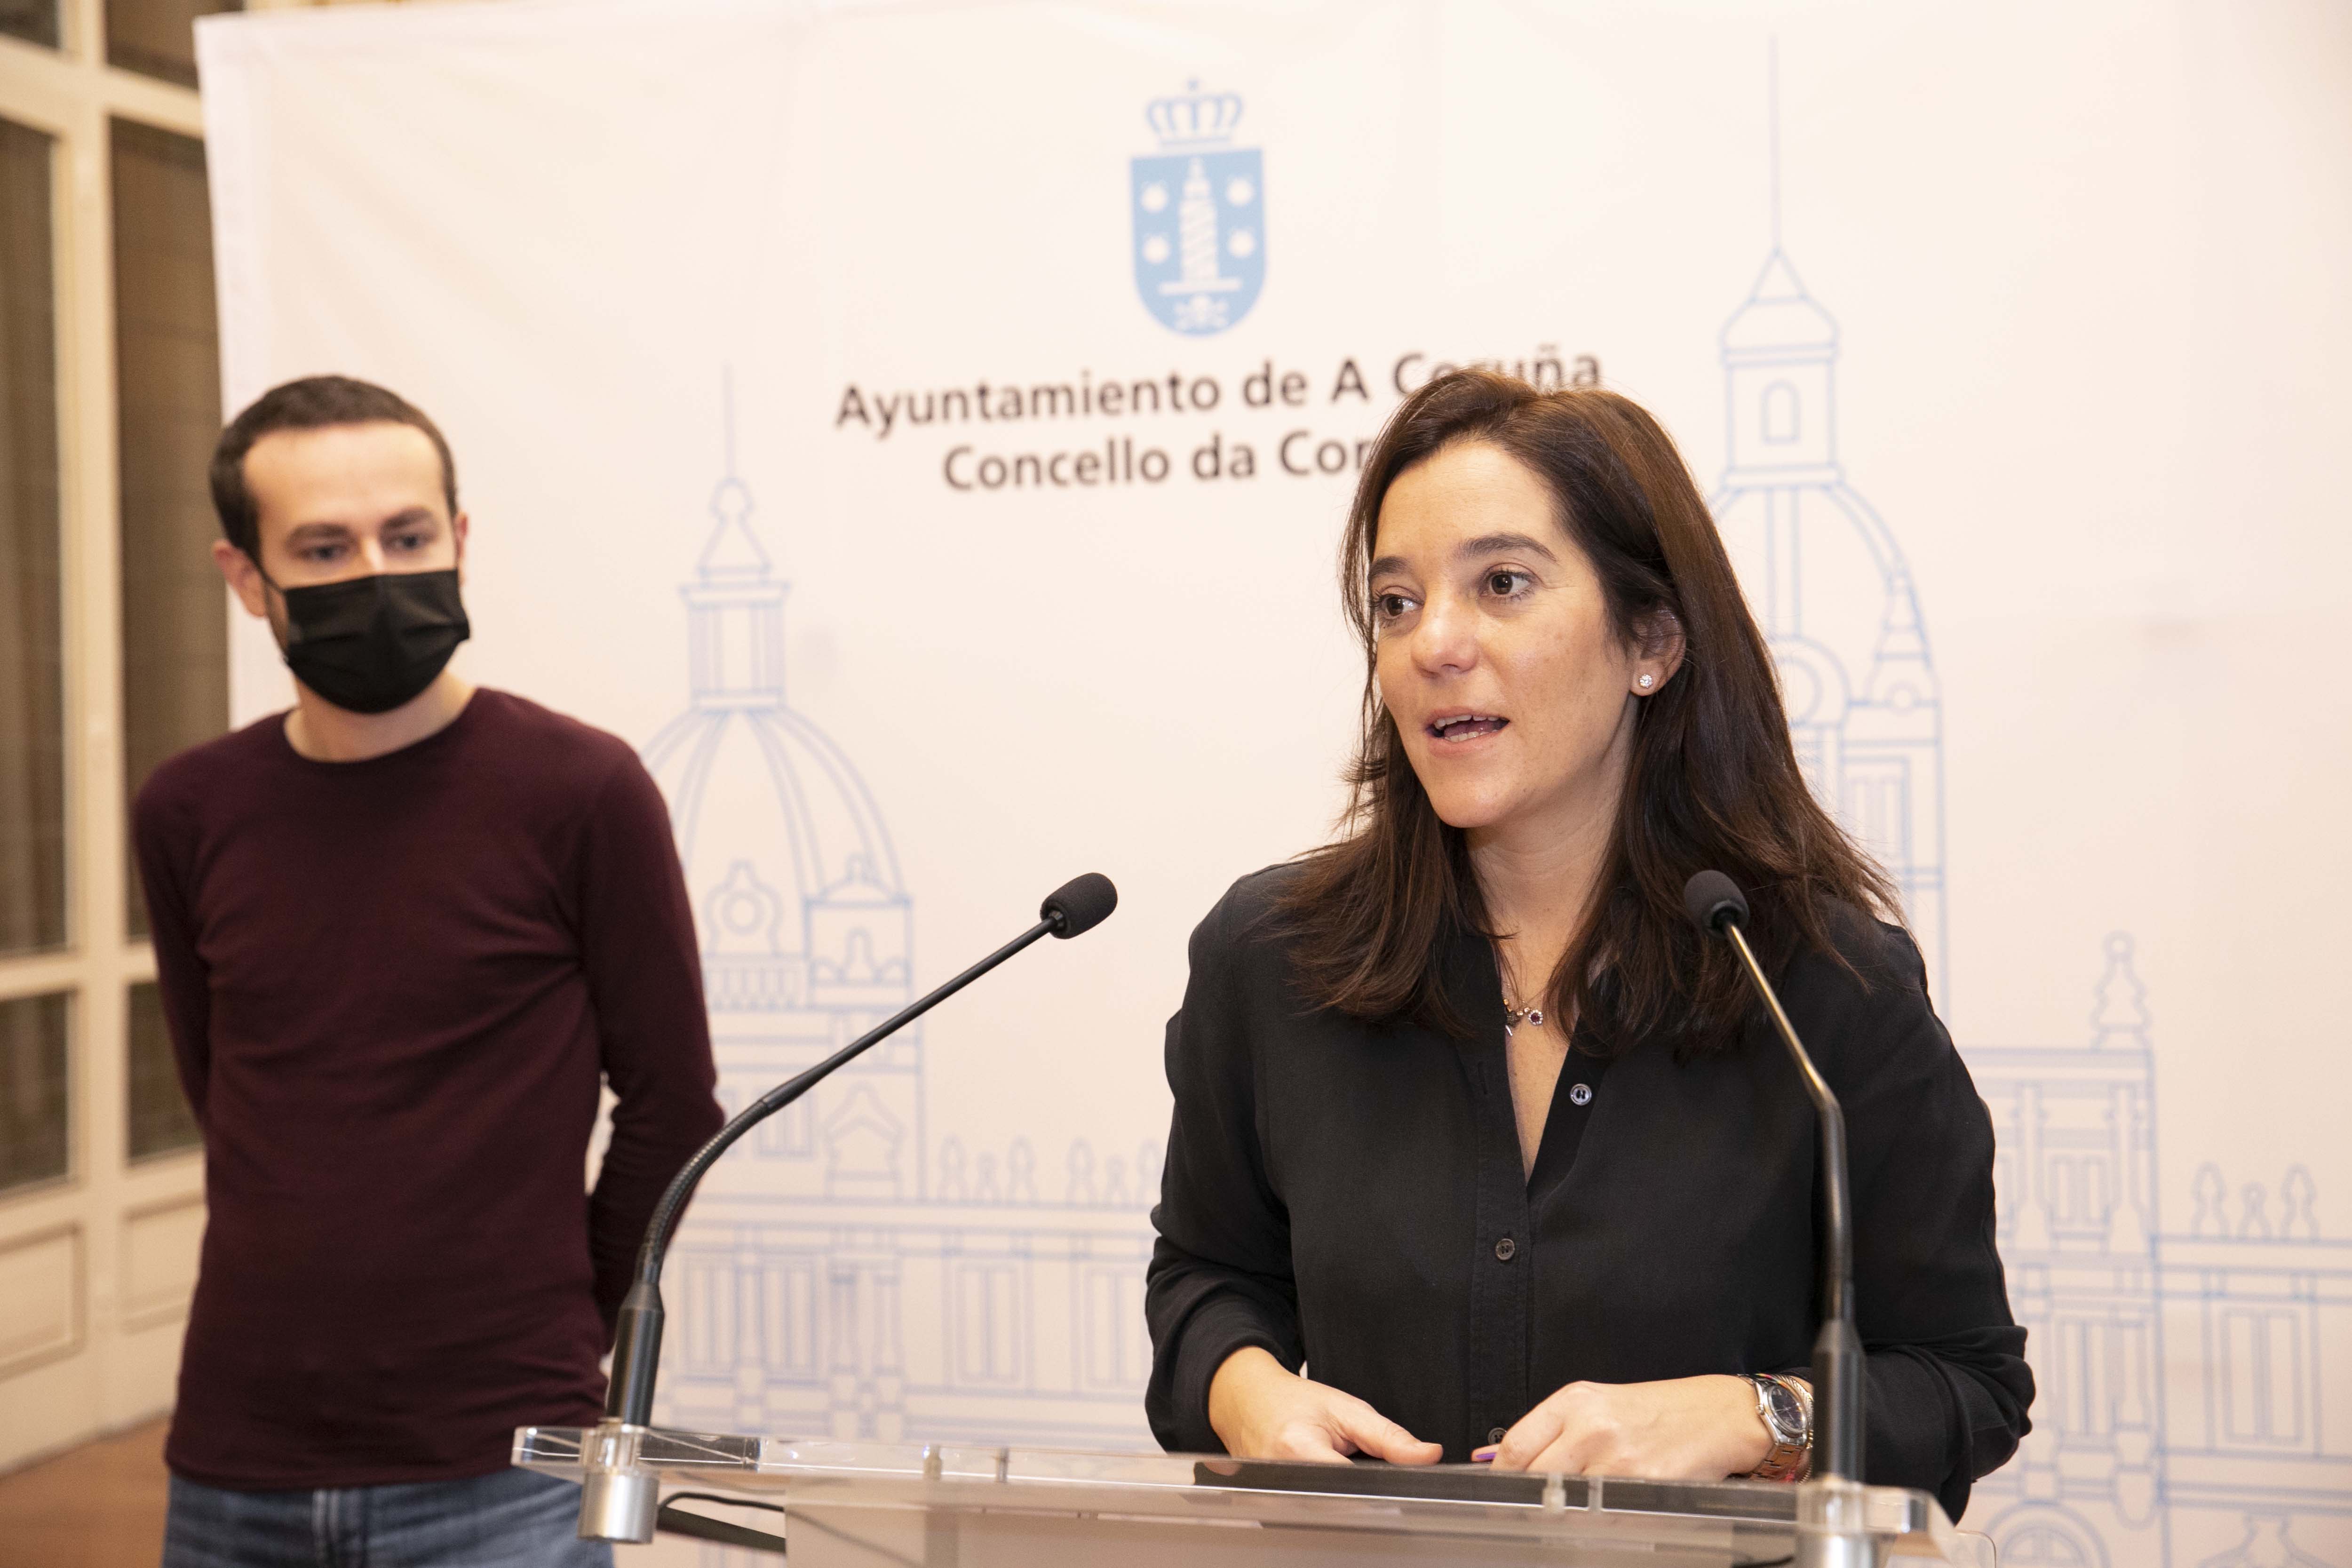 La Academia y el Concello de A Coruña presentan las actividades que convertirán a la ciudad en el “epicentro del audiovisual gallego” en 2022